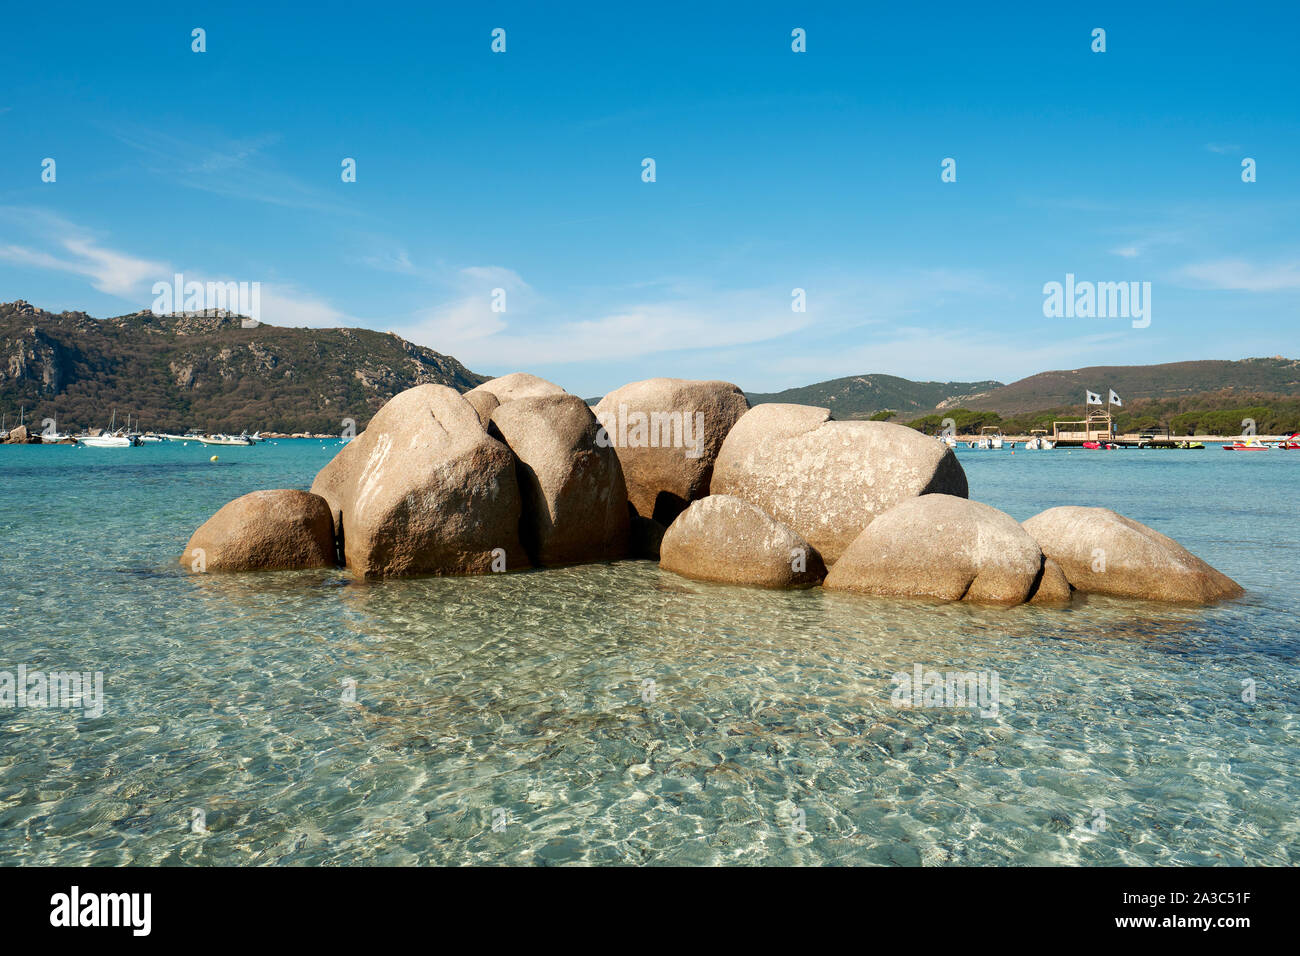 L'eau claire et les roches de sable blanc de la plage de Santa Giulia / plage de Santa Giulia, Golfe de Santa Giulia, Porto-Vecchio Corse du sud-est de la France. Banque D'Images